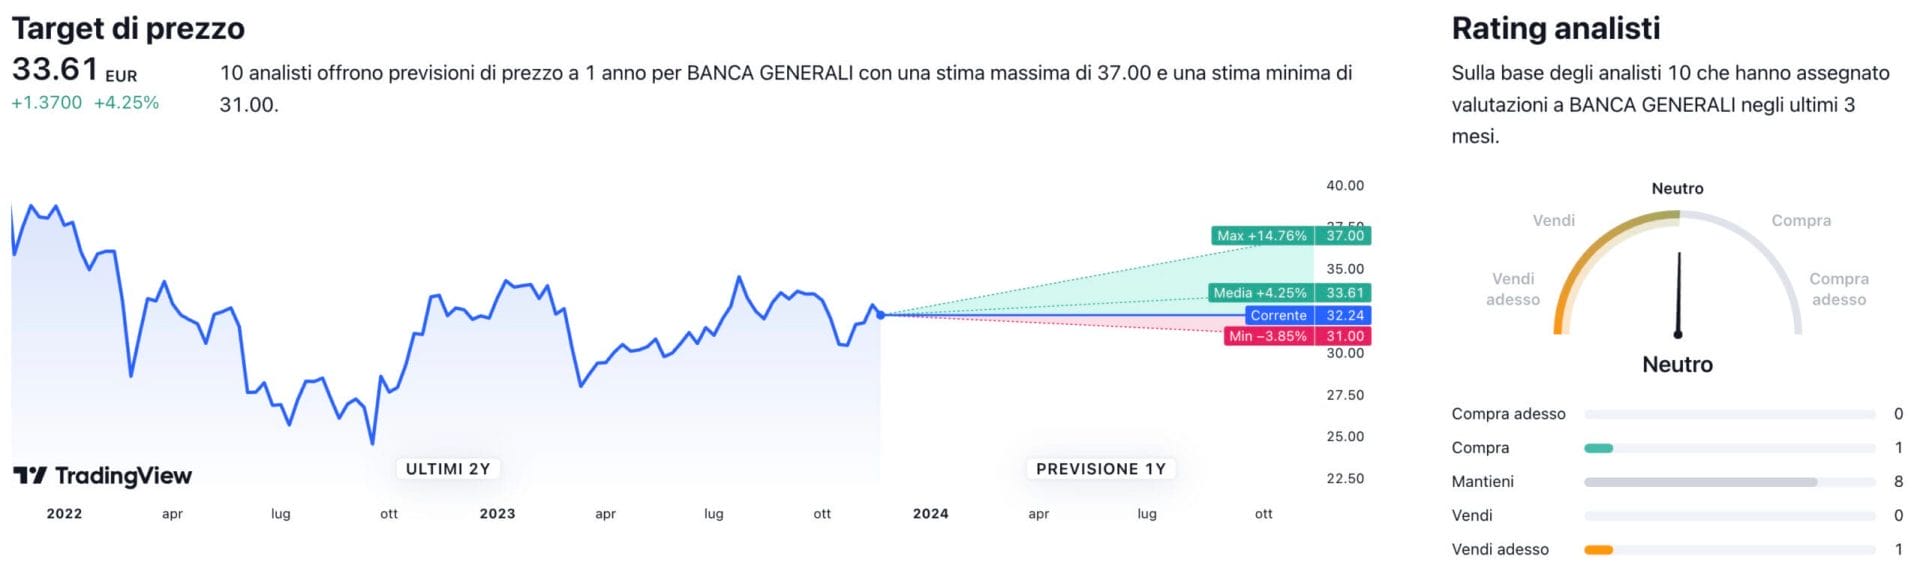 Target di prezzo a un anno e raccomandazioni degli analisti per il titolo Banca Generali